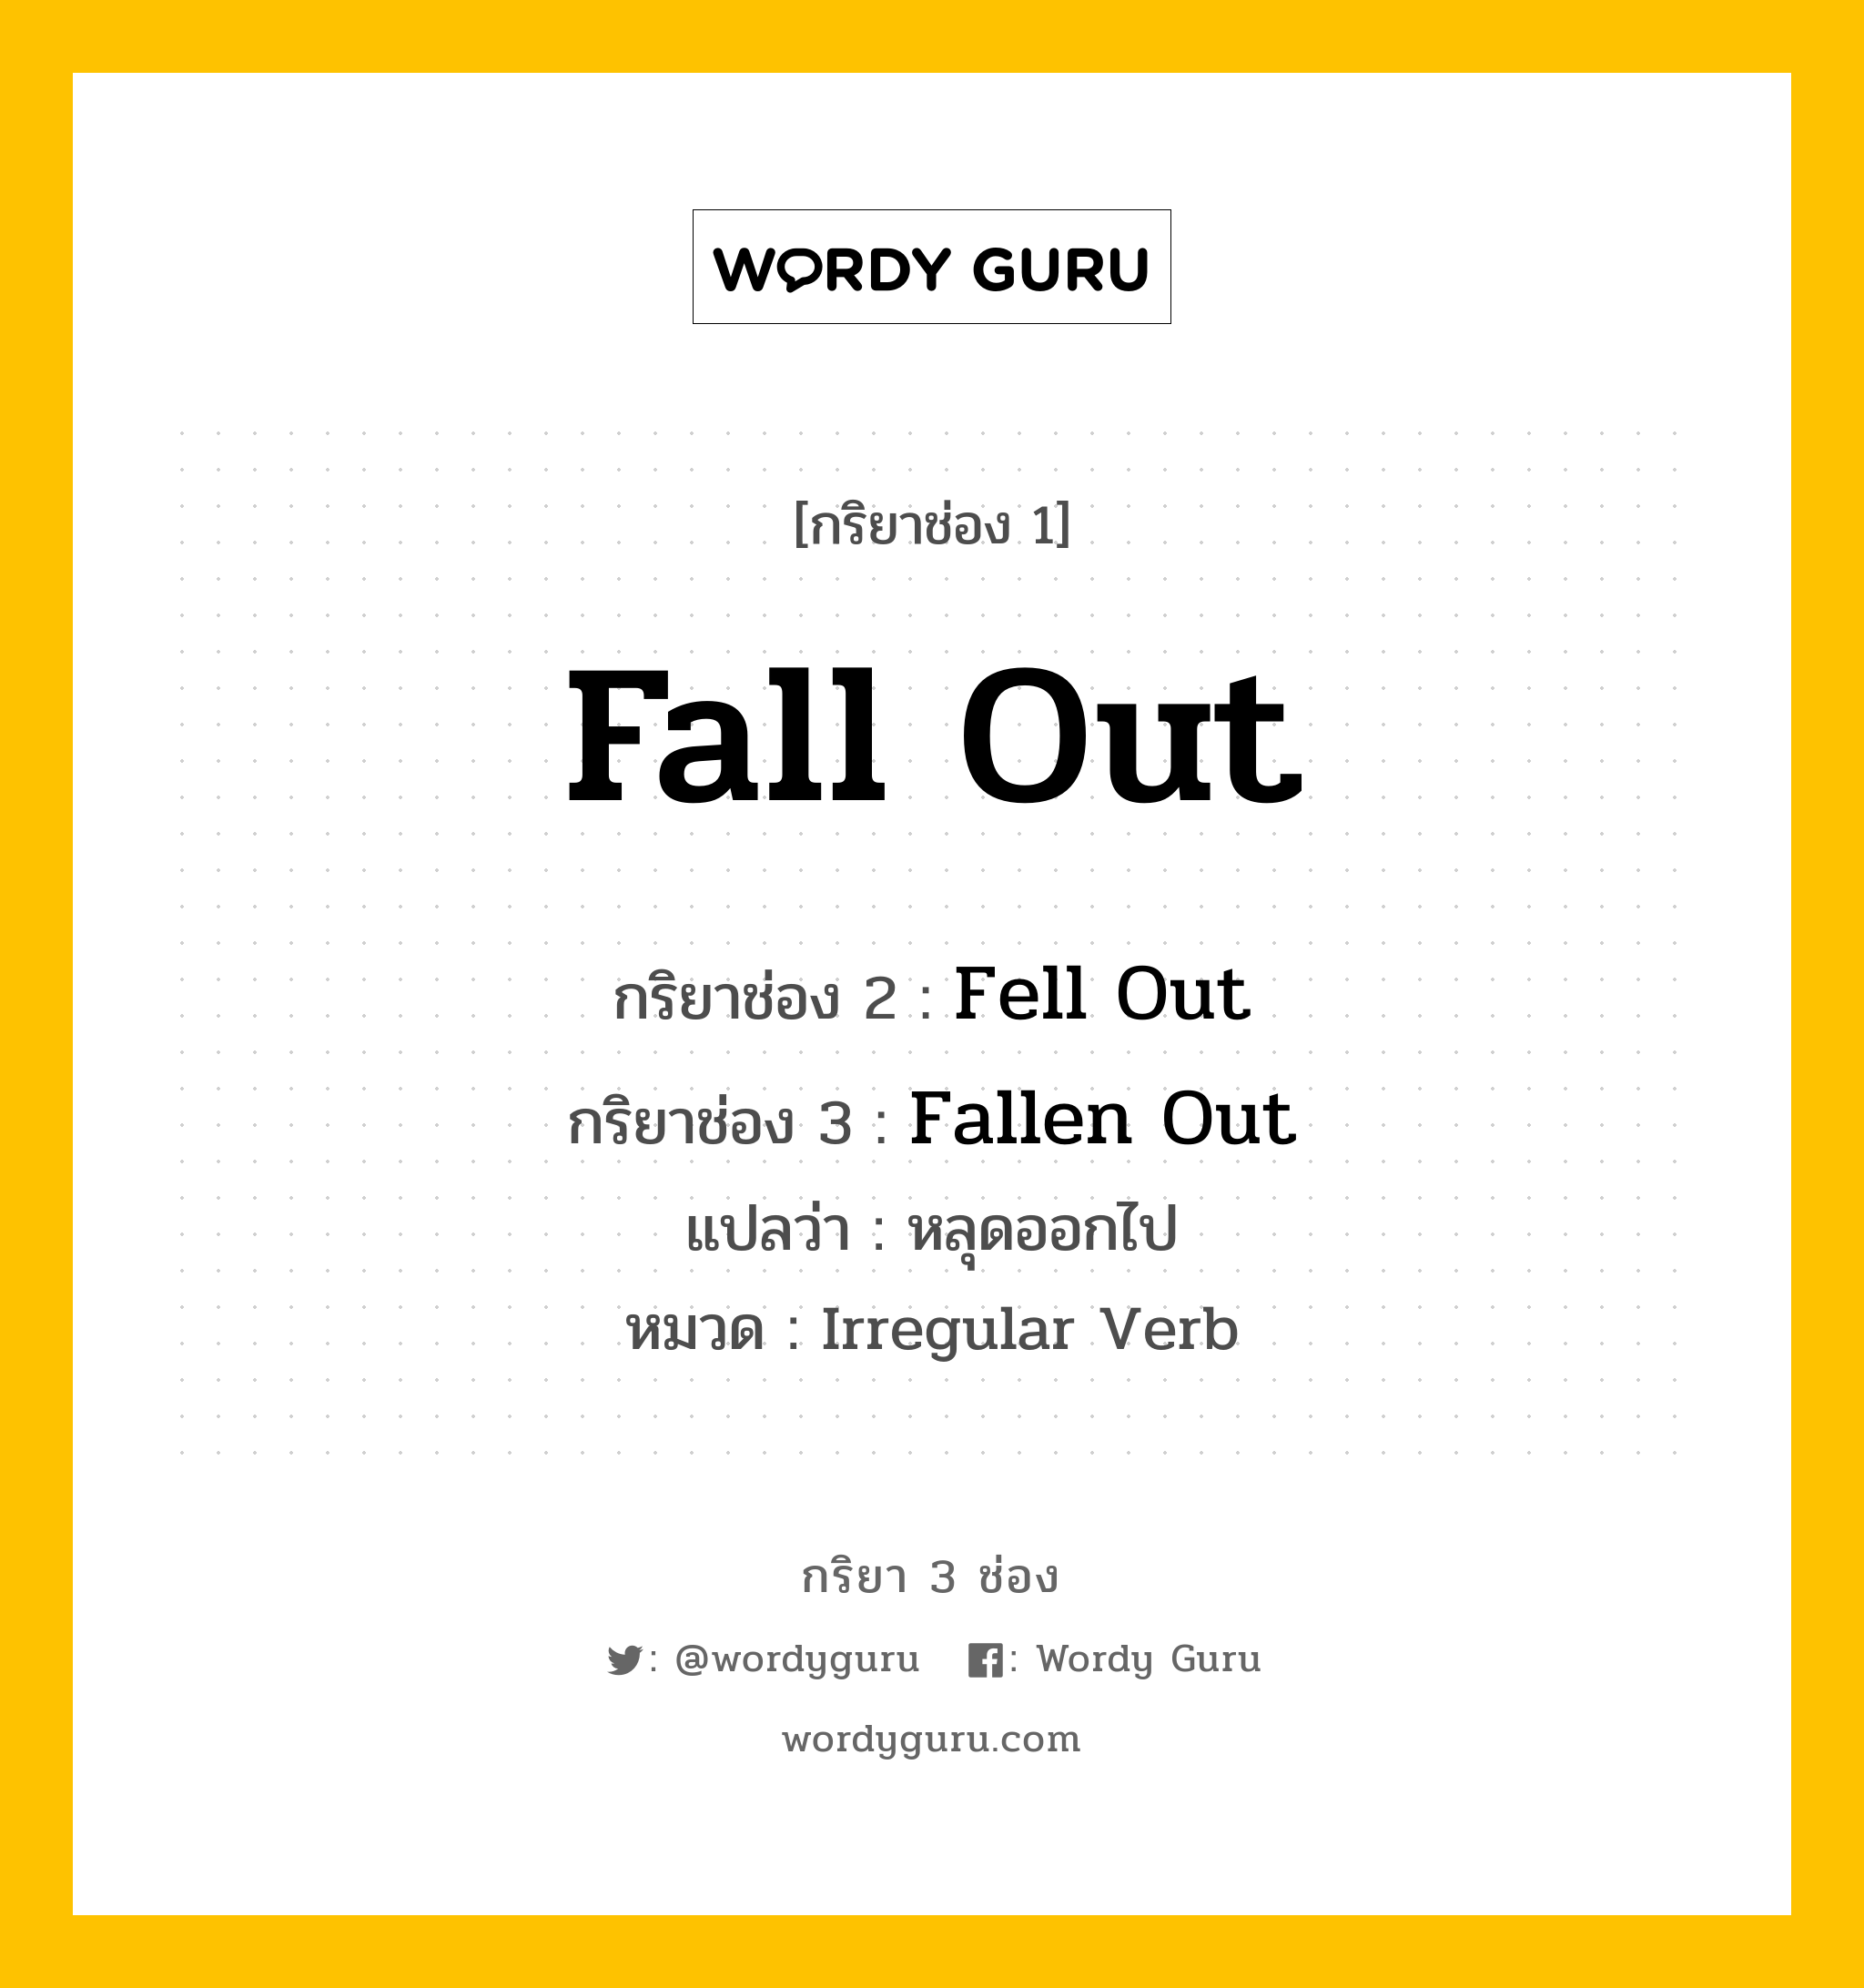 Fall Out มีกริยา 3 ช่องอะไรบ้าง? คำศัพท์ในกลุ่มประเภท Irregular Verb, กริยาช่อง 1 Fall Out กริยาช่อง 2 Fell Out กริยาช่อง 3 Fallen Out แปลว่า หลุดออกไป หมวด Irregular Verb หมวด Irregular Verb